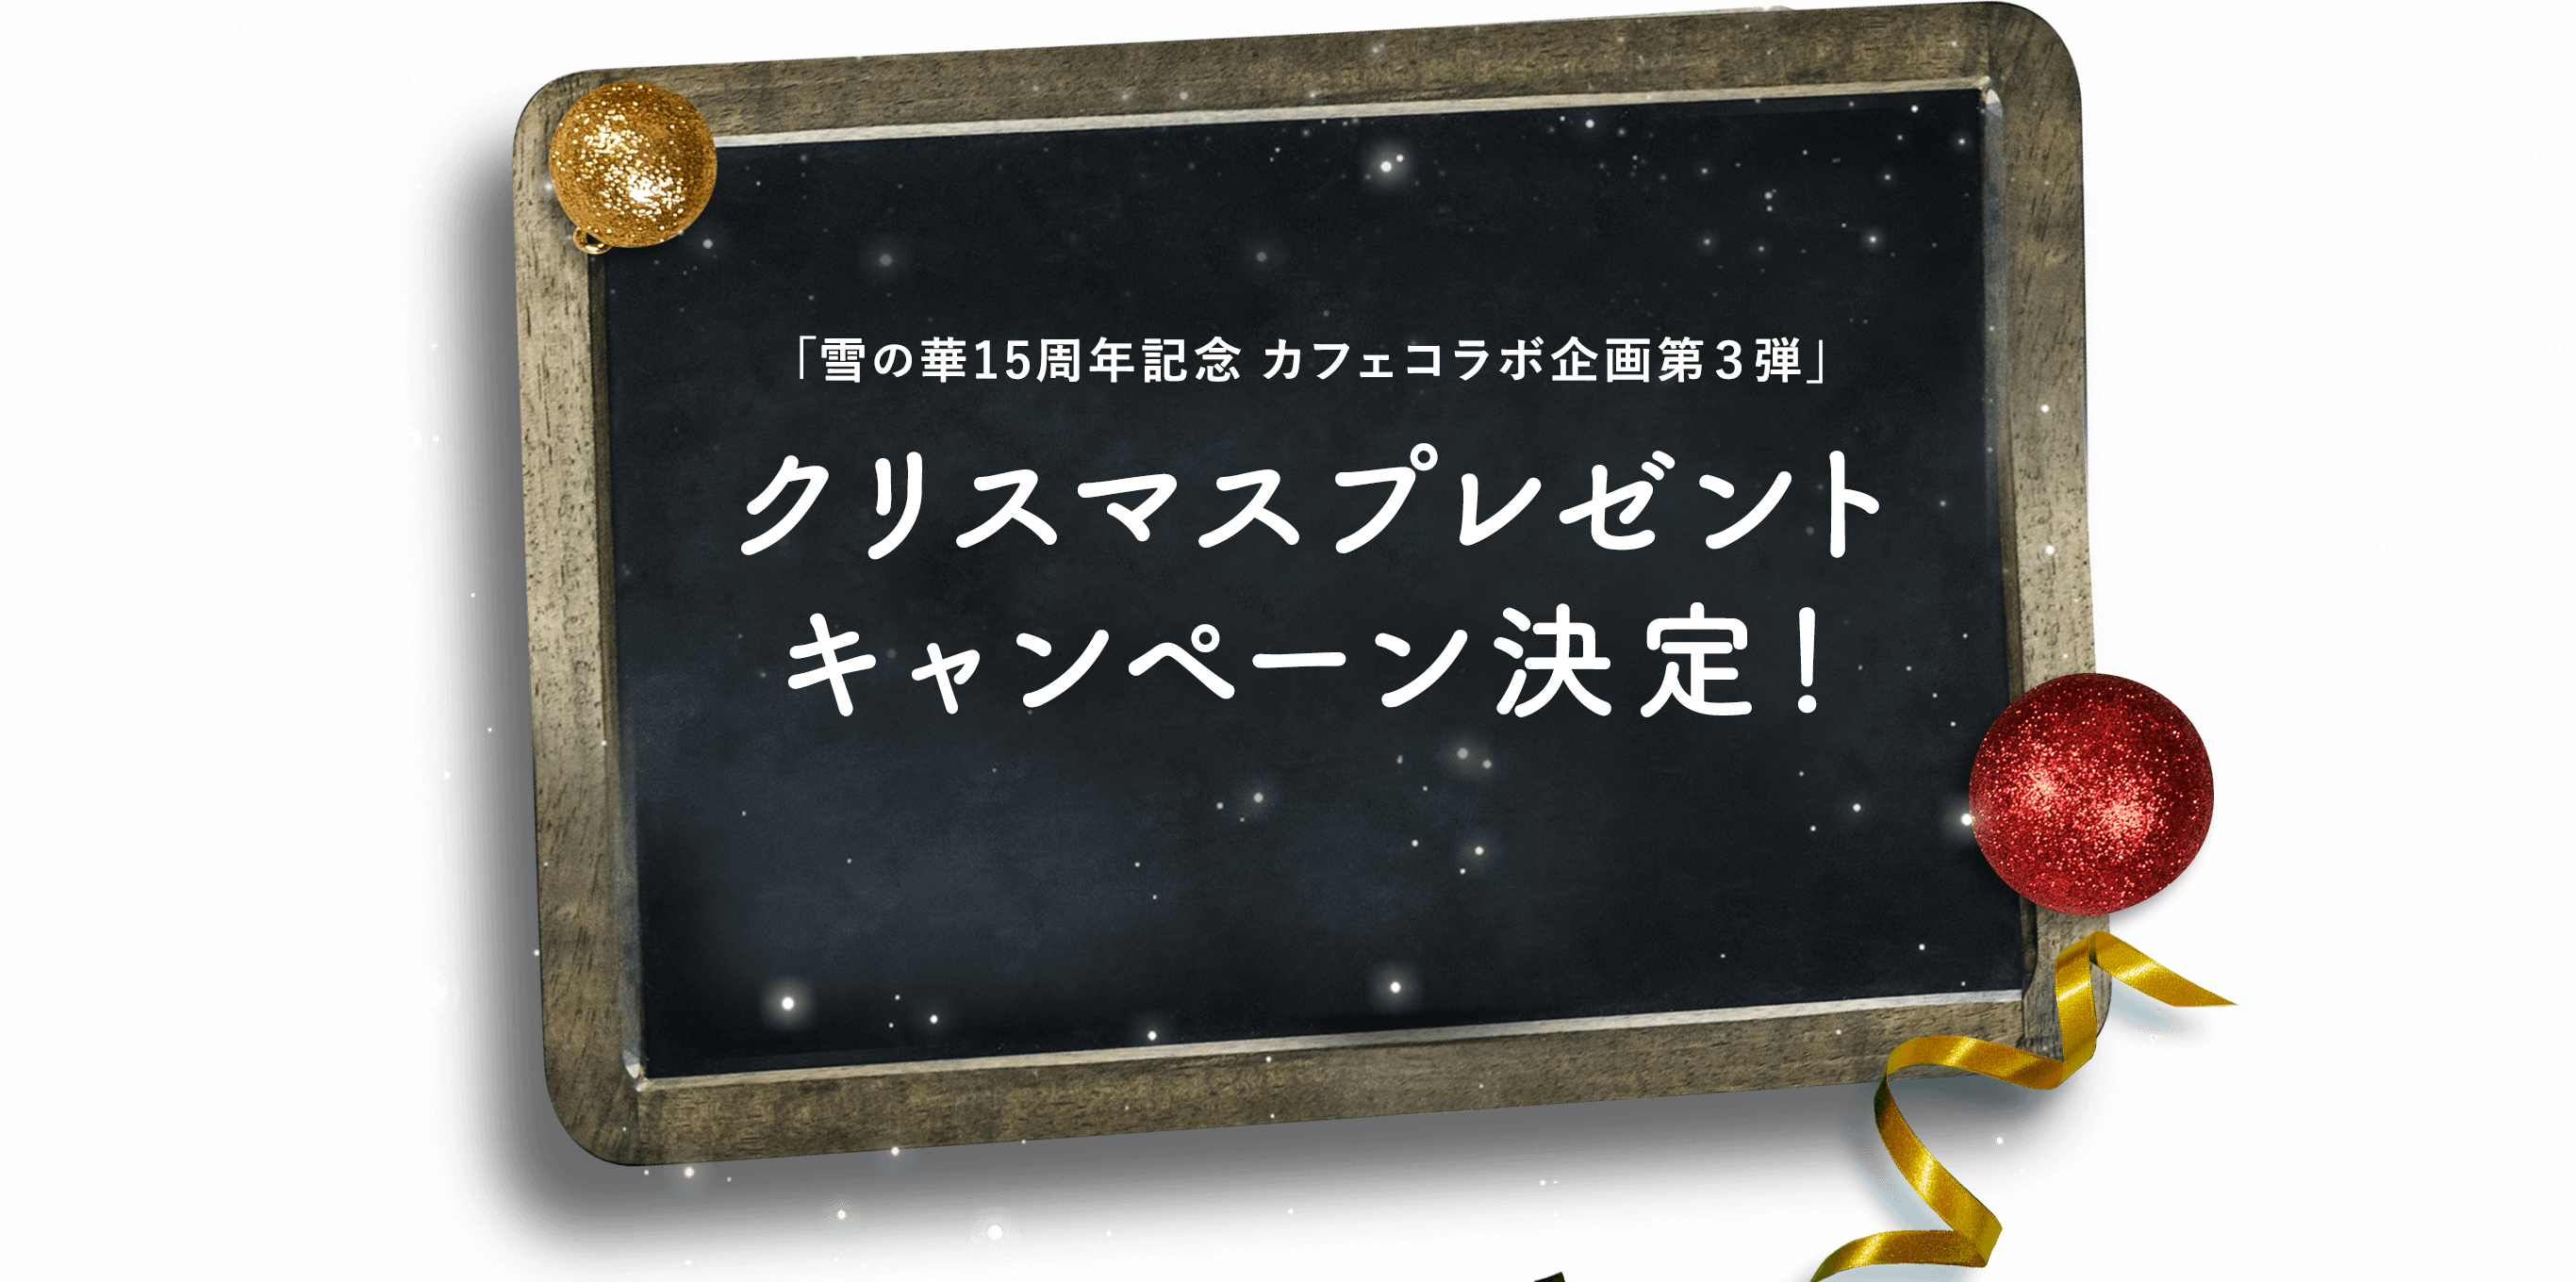 企画第一弾　「雪の華×YUKINOHANA」 スペシャル限定メニュー発売！